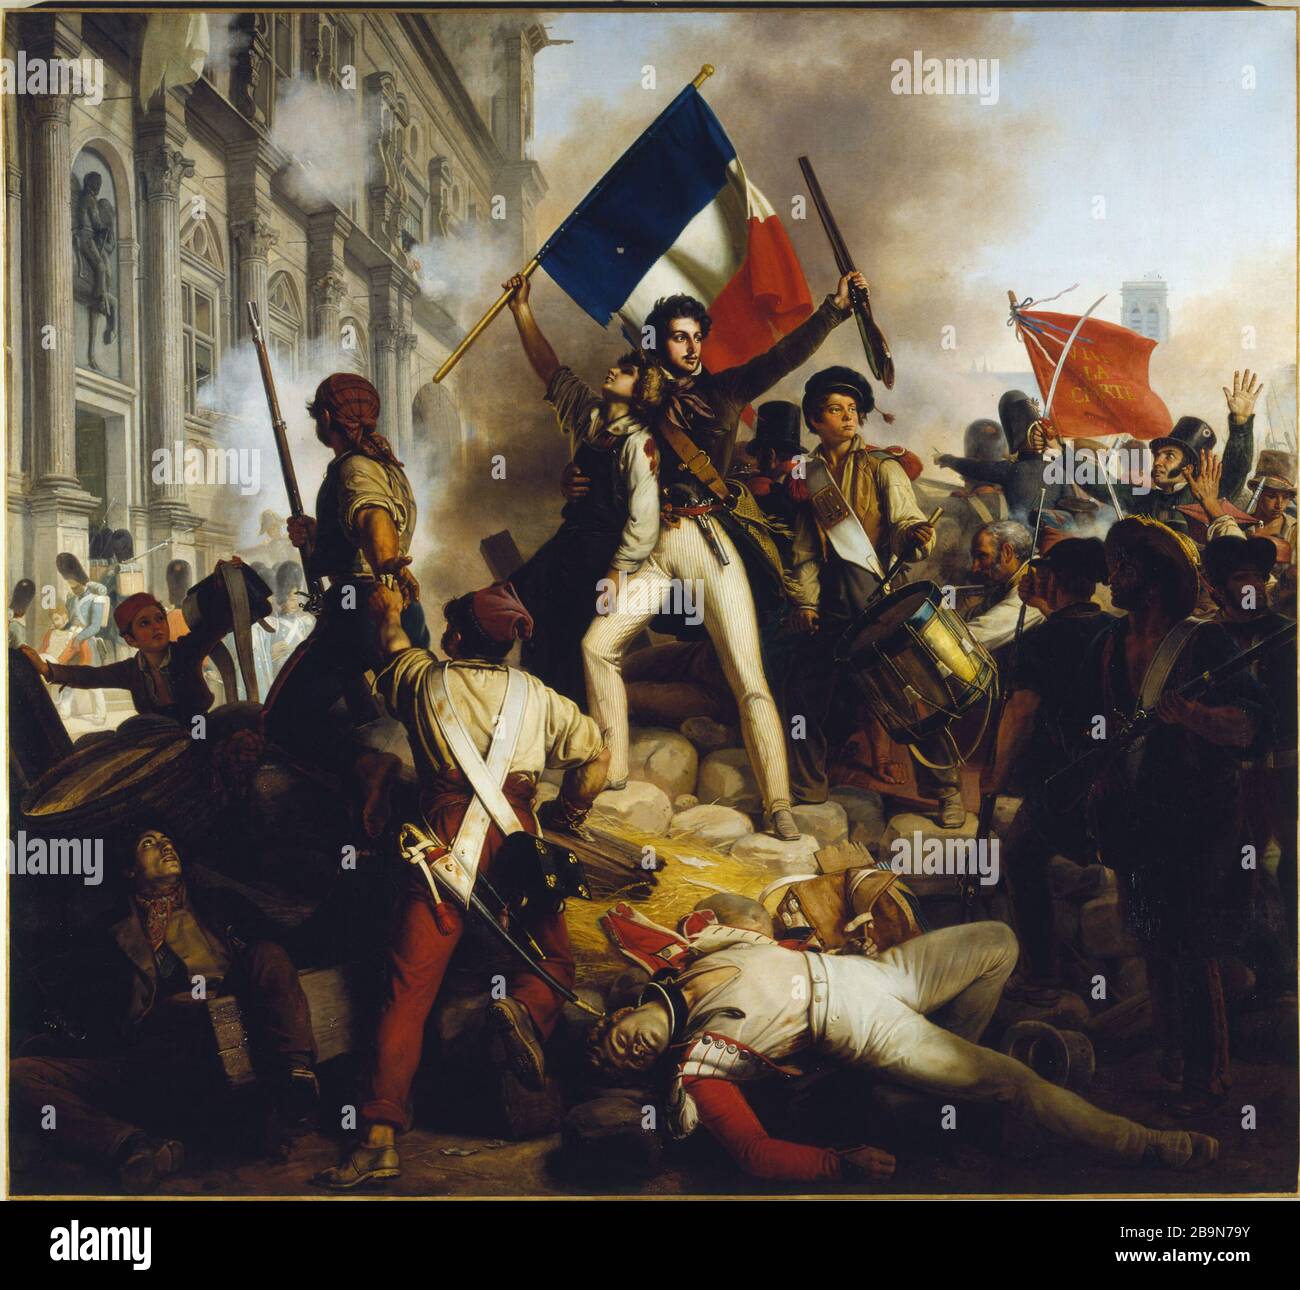 Fighting near the City Hall, July 28, 1830 Jean Schnetz (1787-1870). 'Combat près de l'Hôtel de Ville, 28 juillet 1830'. Musée des Beaux-Arts de la Ville de Paris, Petit Palais. Stock Photo